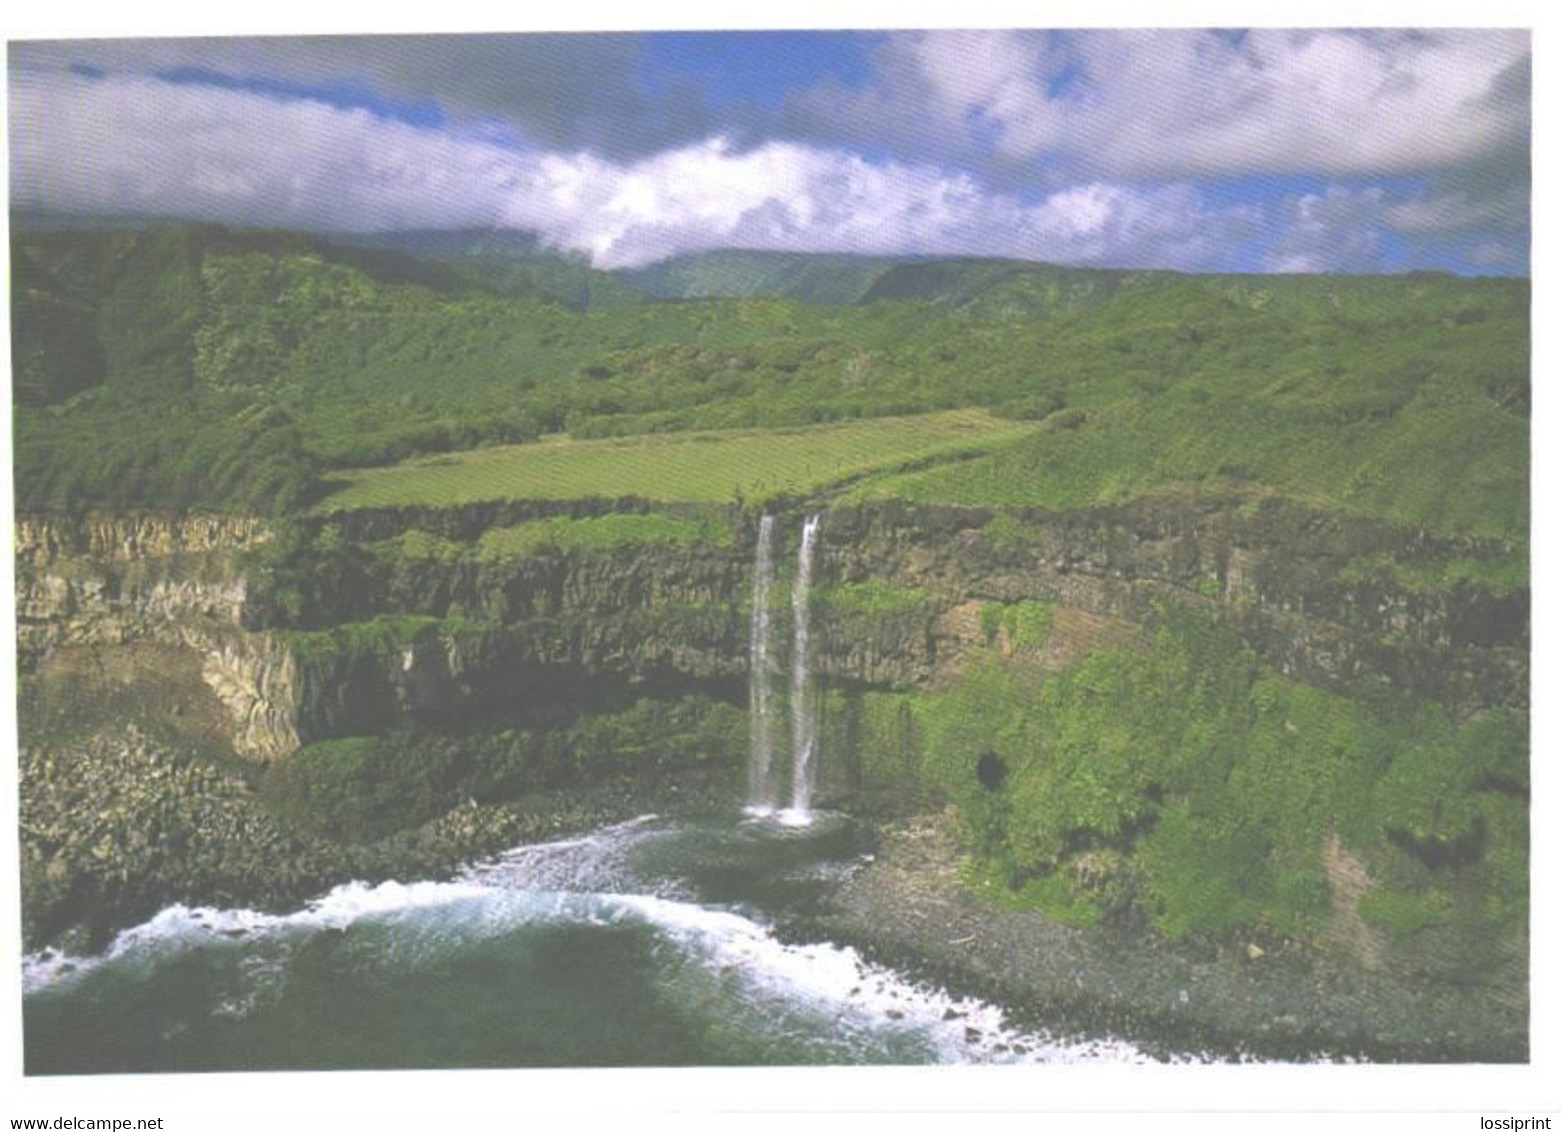 USA:Hawaii, Waterfall To The Sea - Big Island Of Hawaii